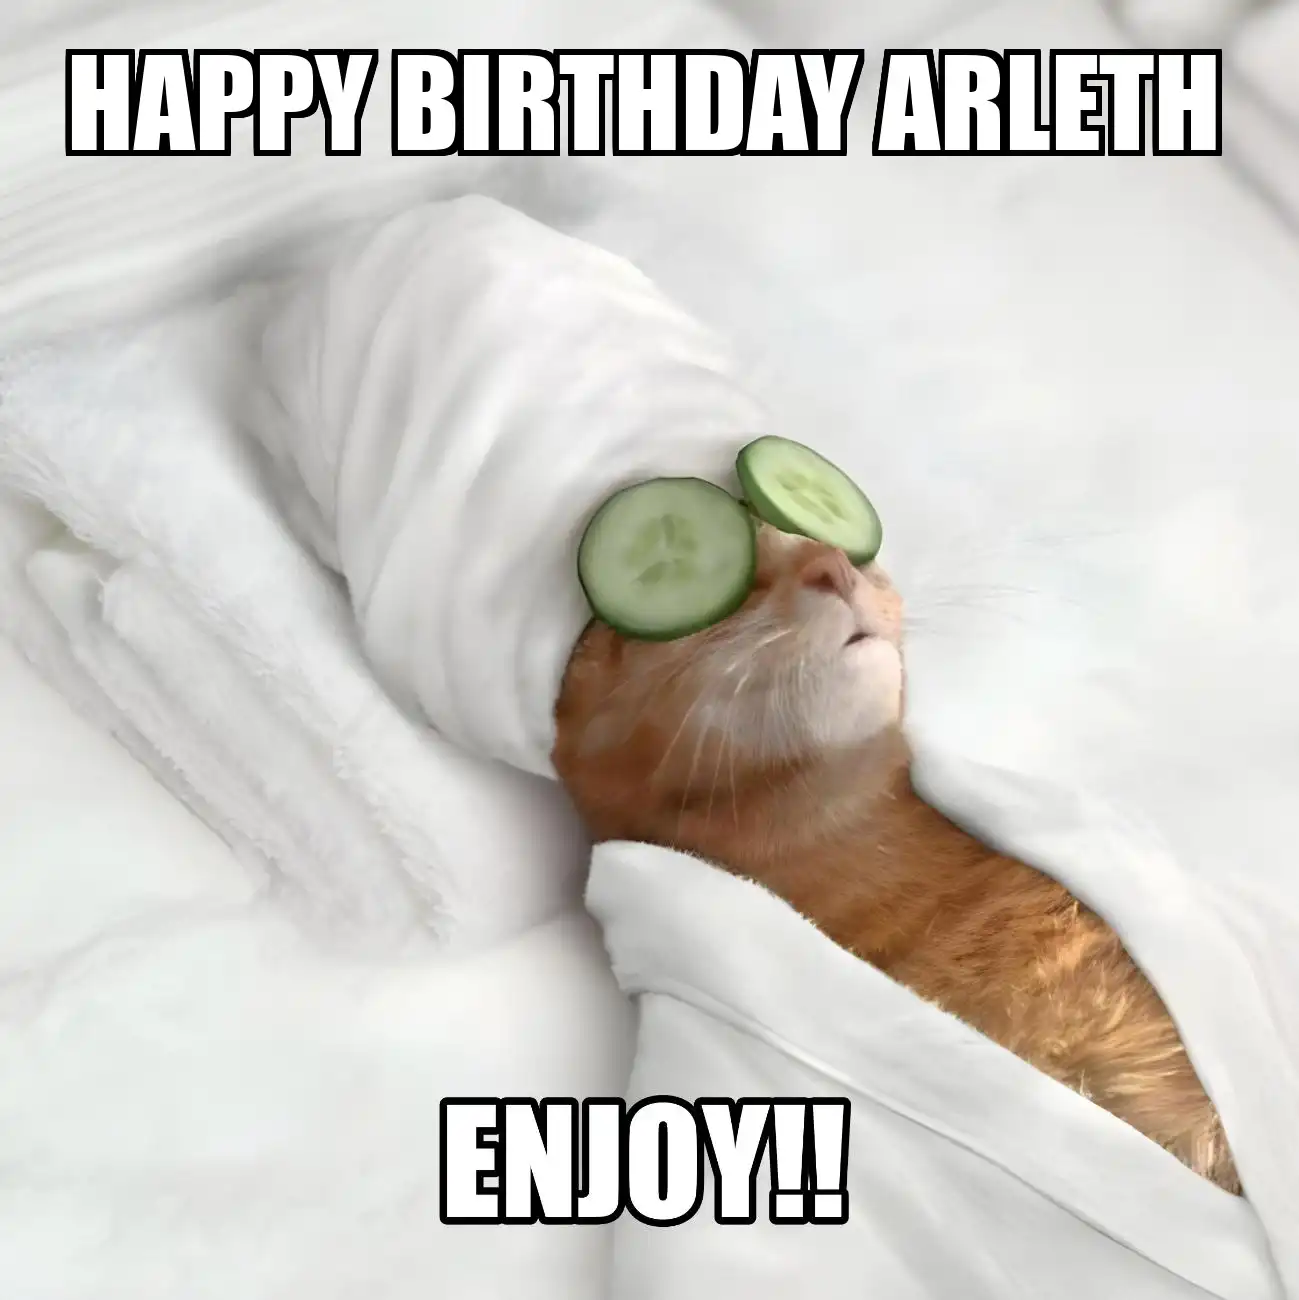 Happy Birthday Arleth Enjoy Cat Meme